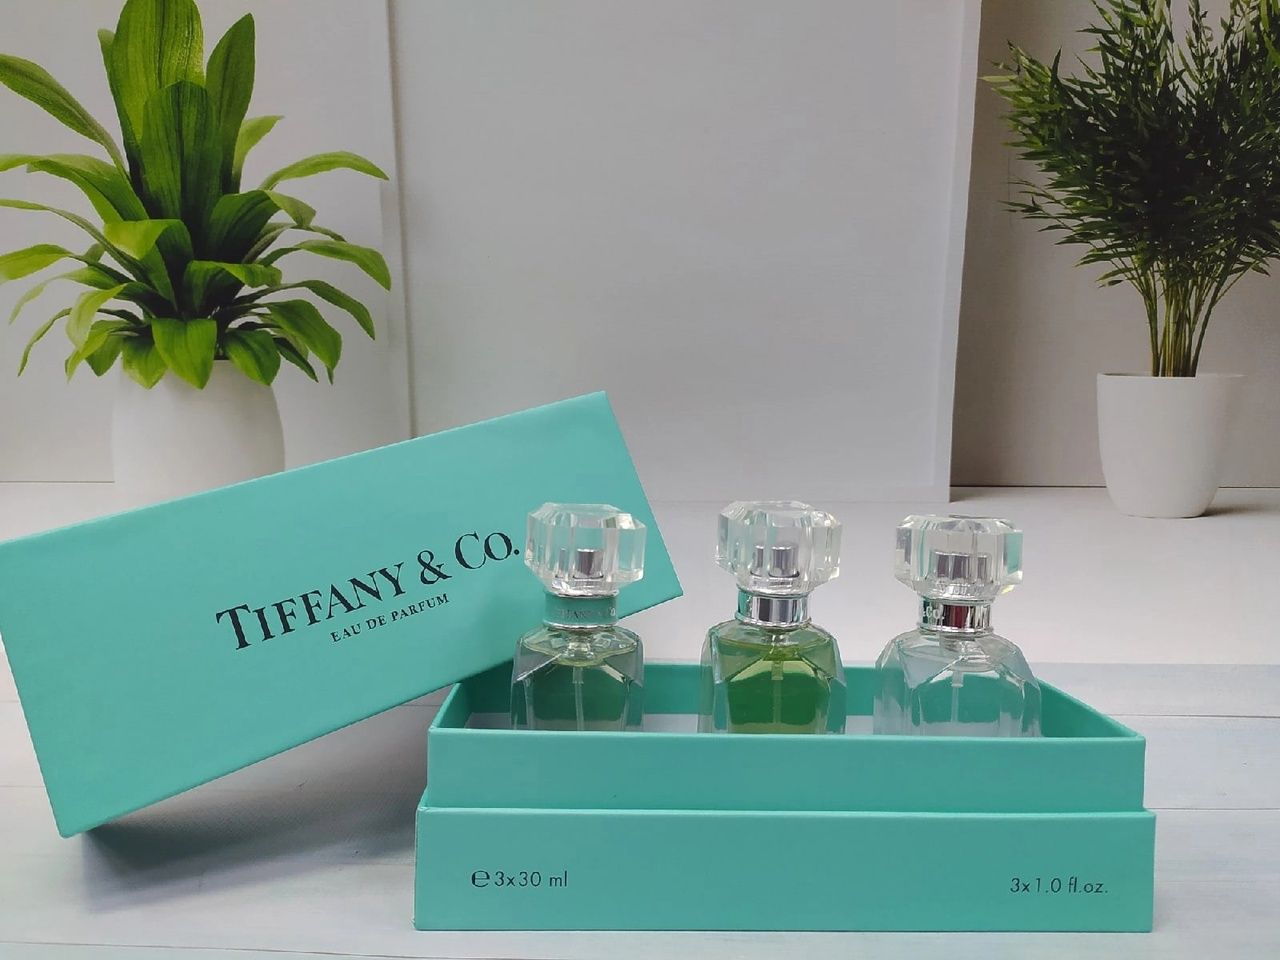 Подарочный набор Tiffany 4 x 30 ml. Тиффани набор 4 в 1 отзывы покупателей. Набор тиффани